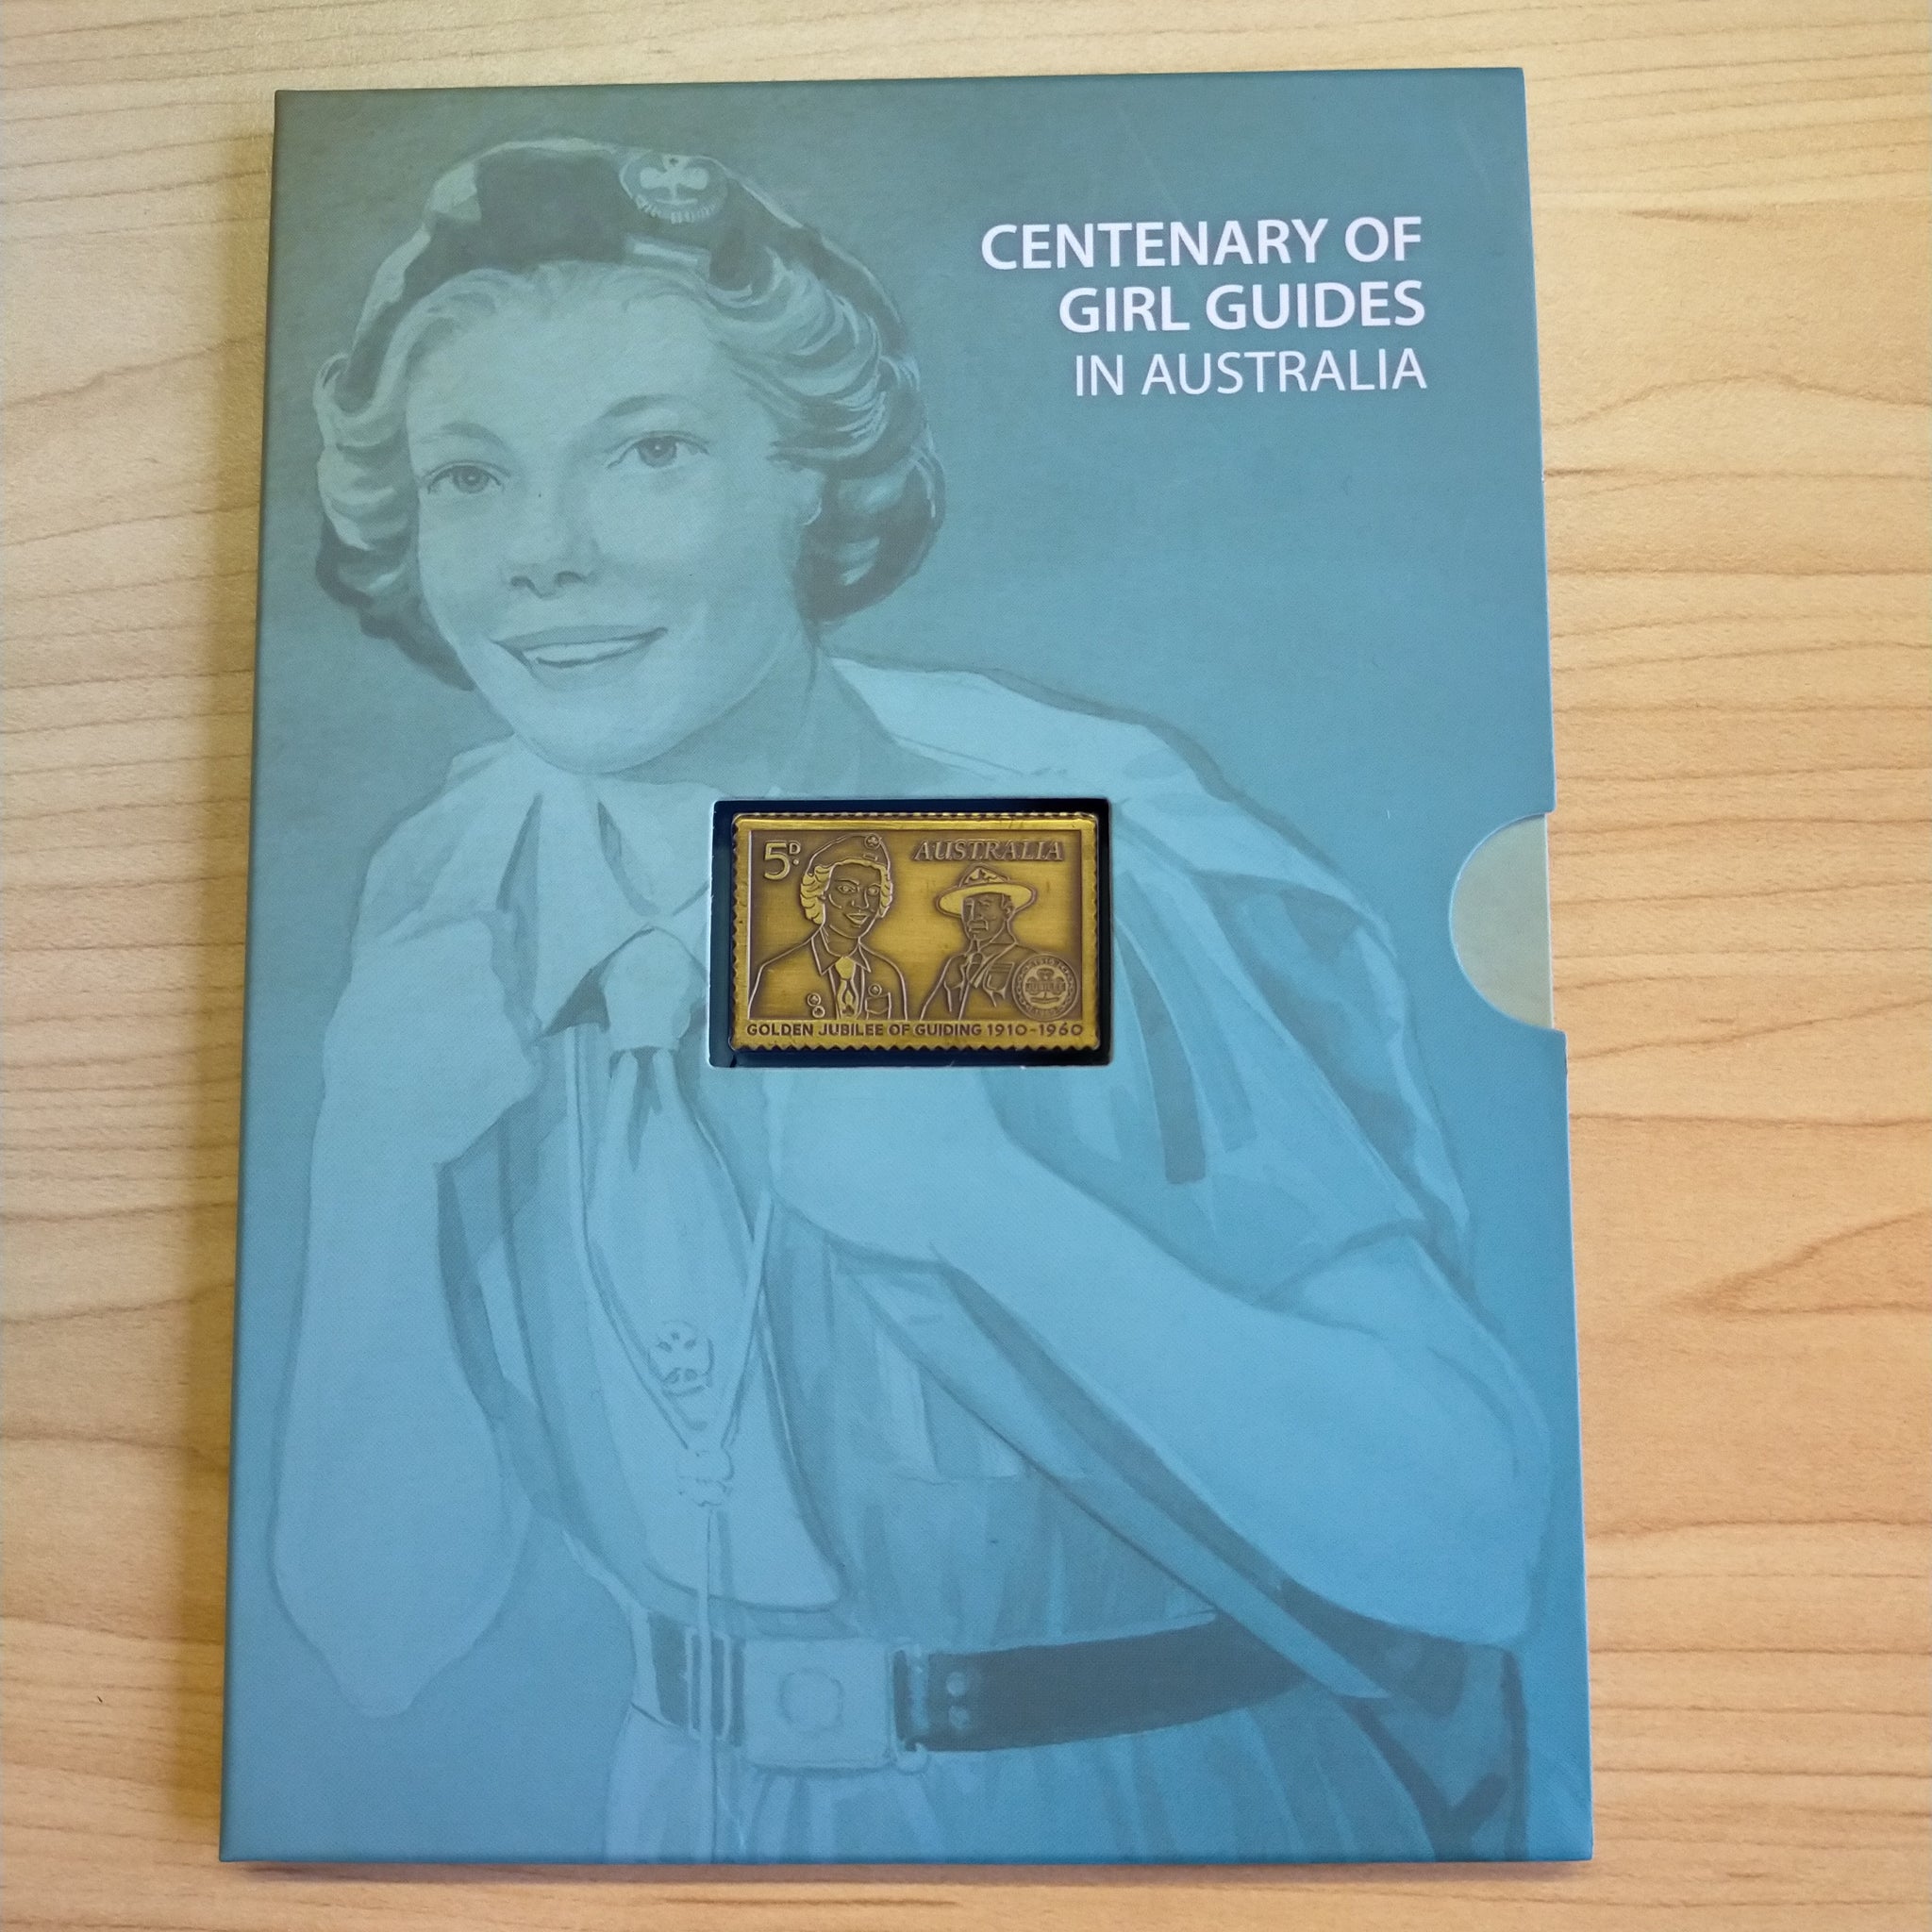 2010 Australia Post Centenary of Girl Guides In Australia Brass Ingot and Stamp Set